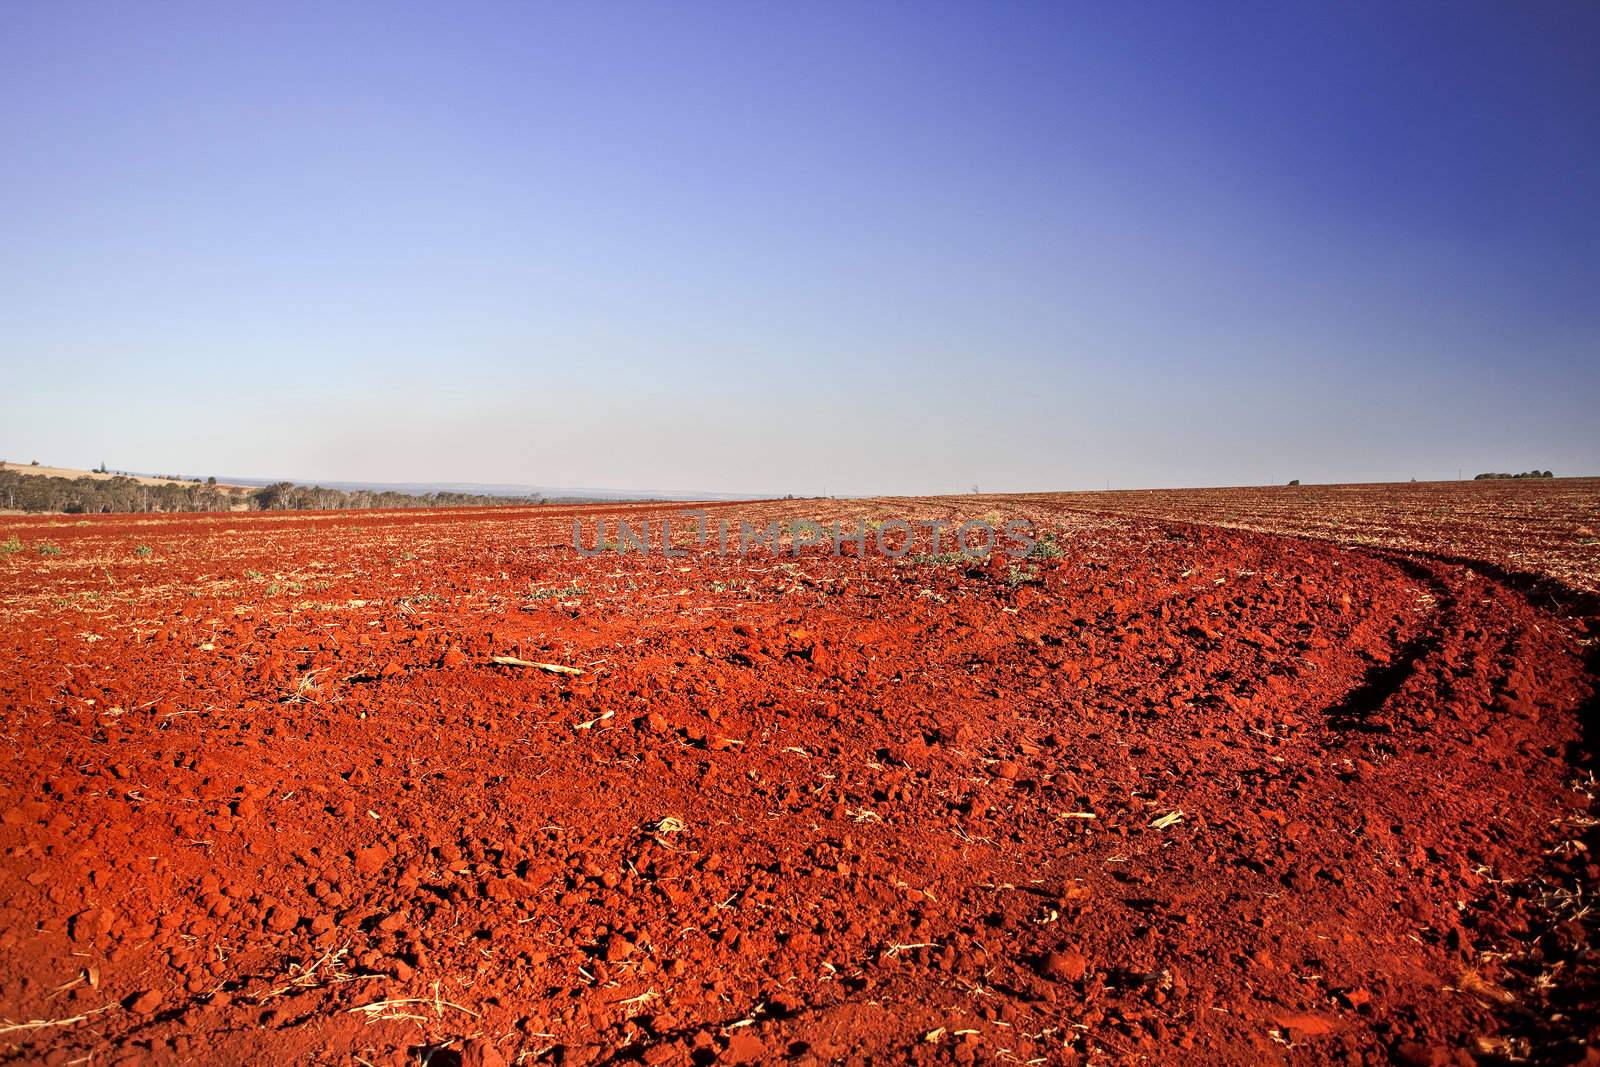 Dry and deserted desert field